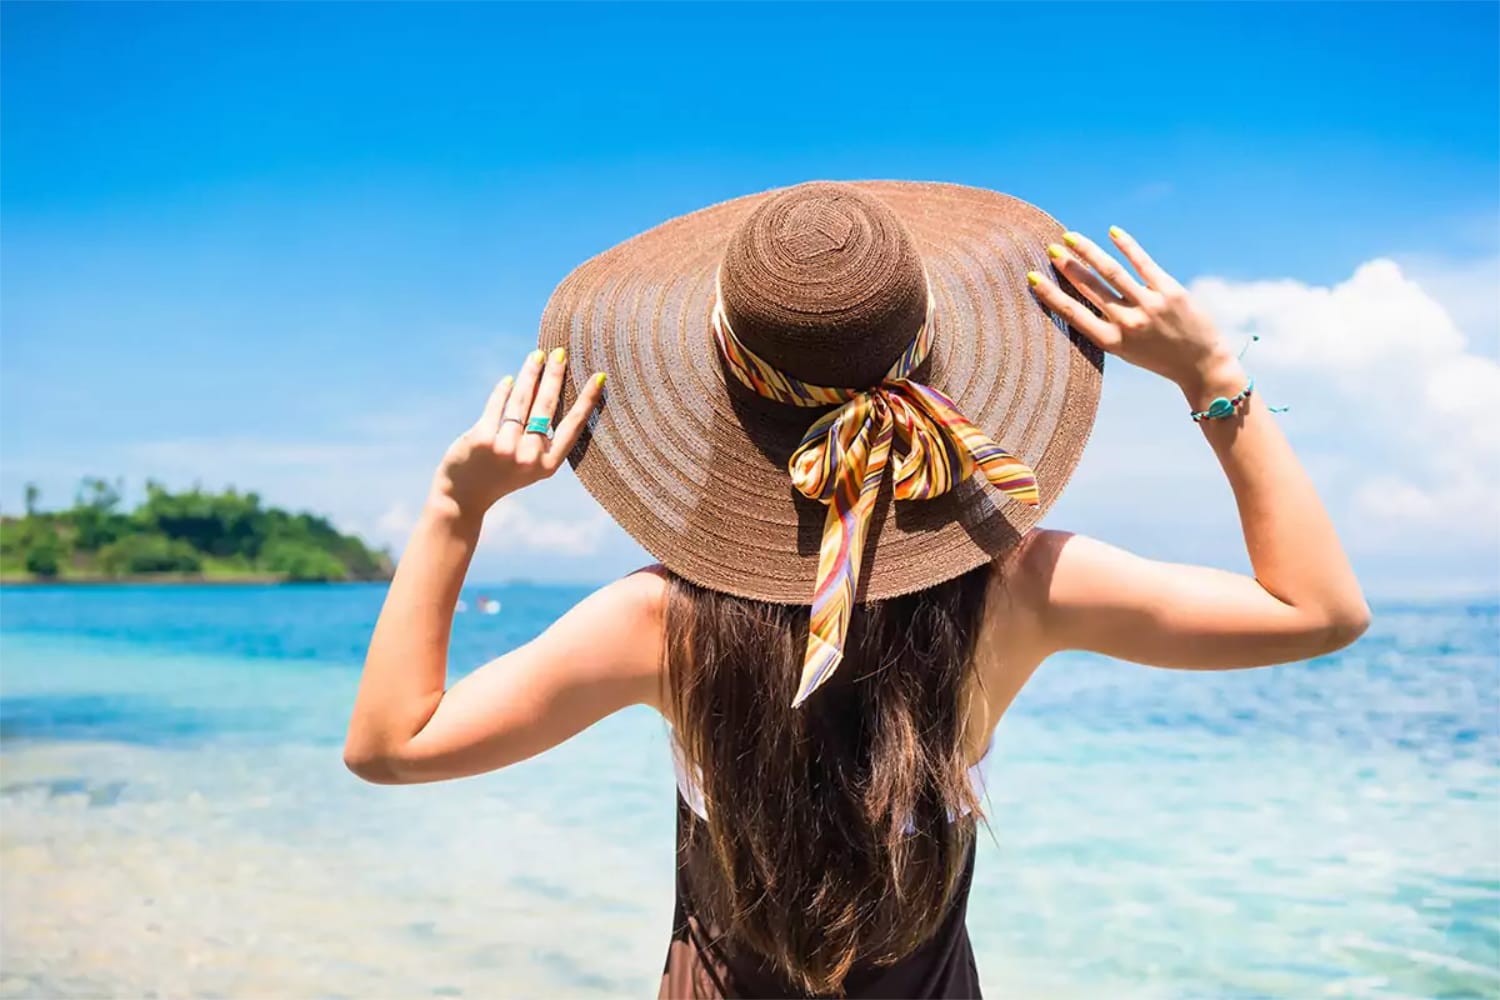 2019 Big Brim Ladies Summer Straw Sun Hat Fashion Vacation Beach Sun Cap Shade Sunhat Beach Caps Leisure